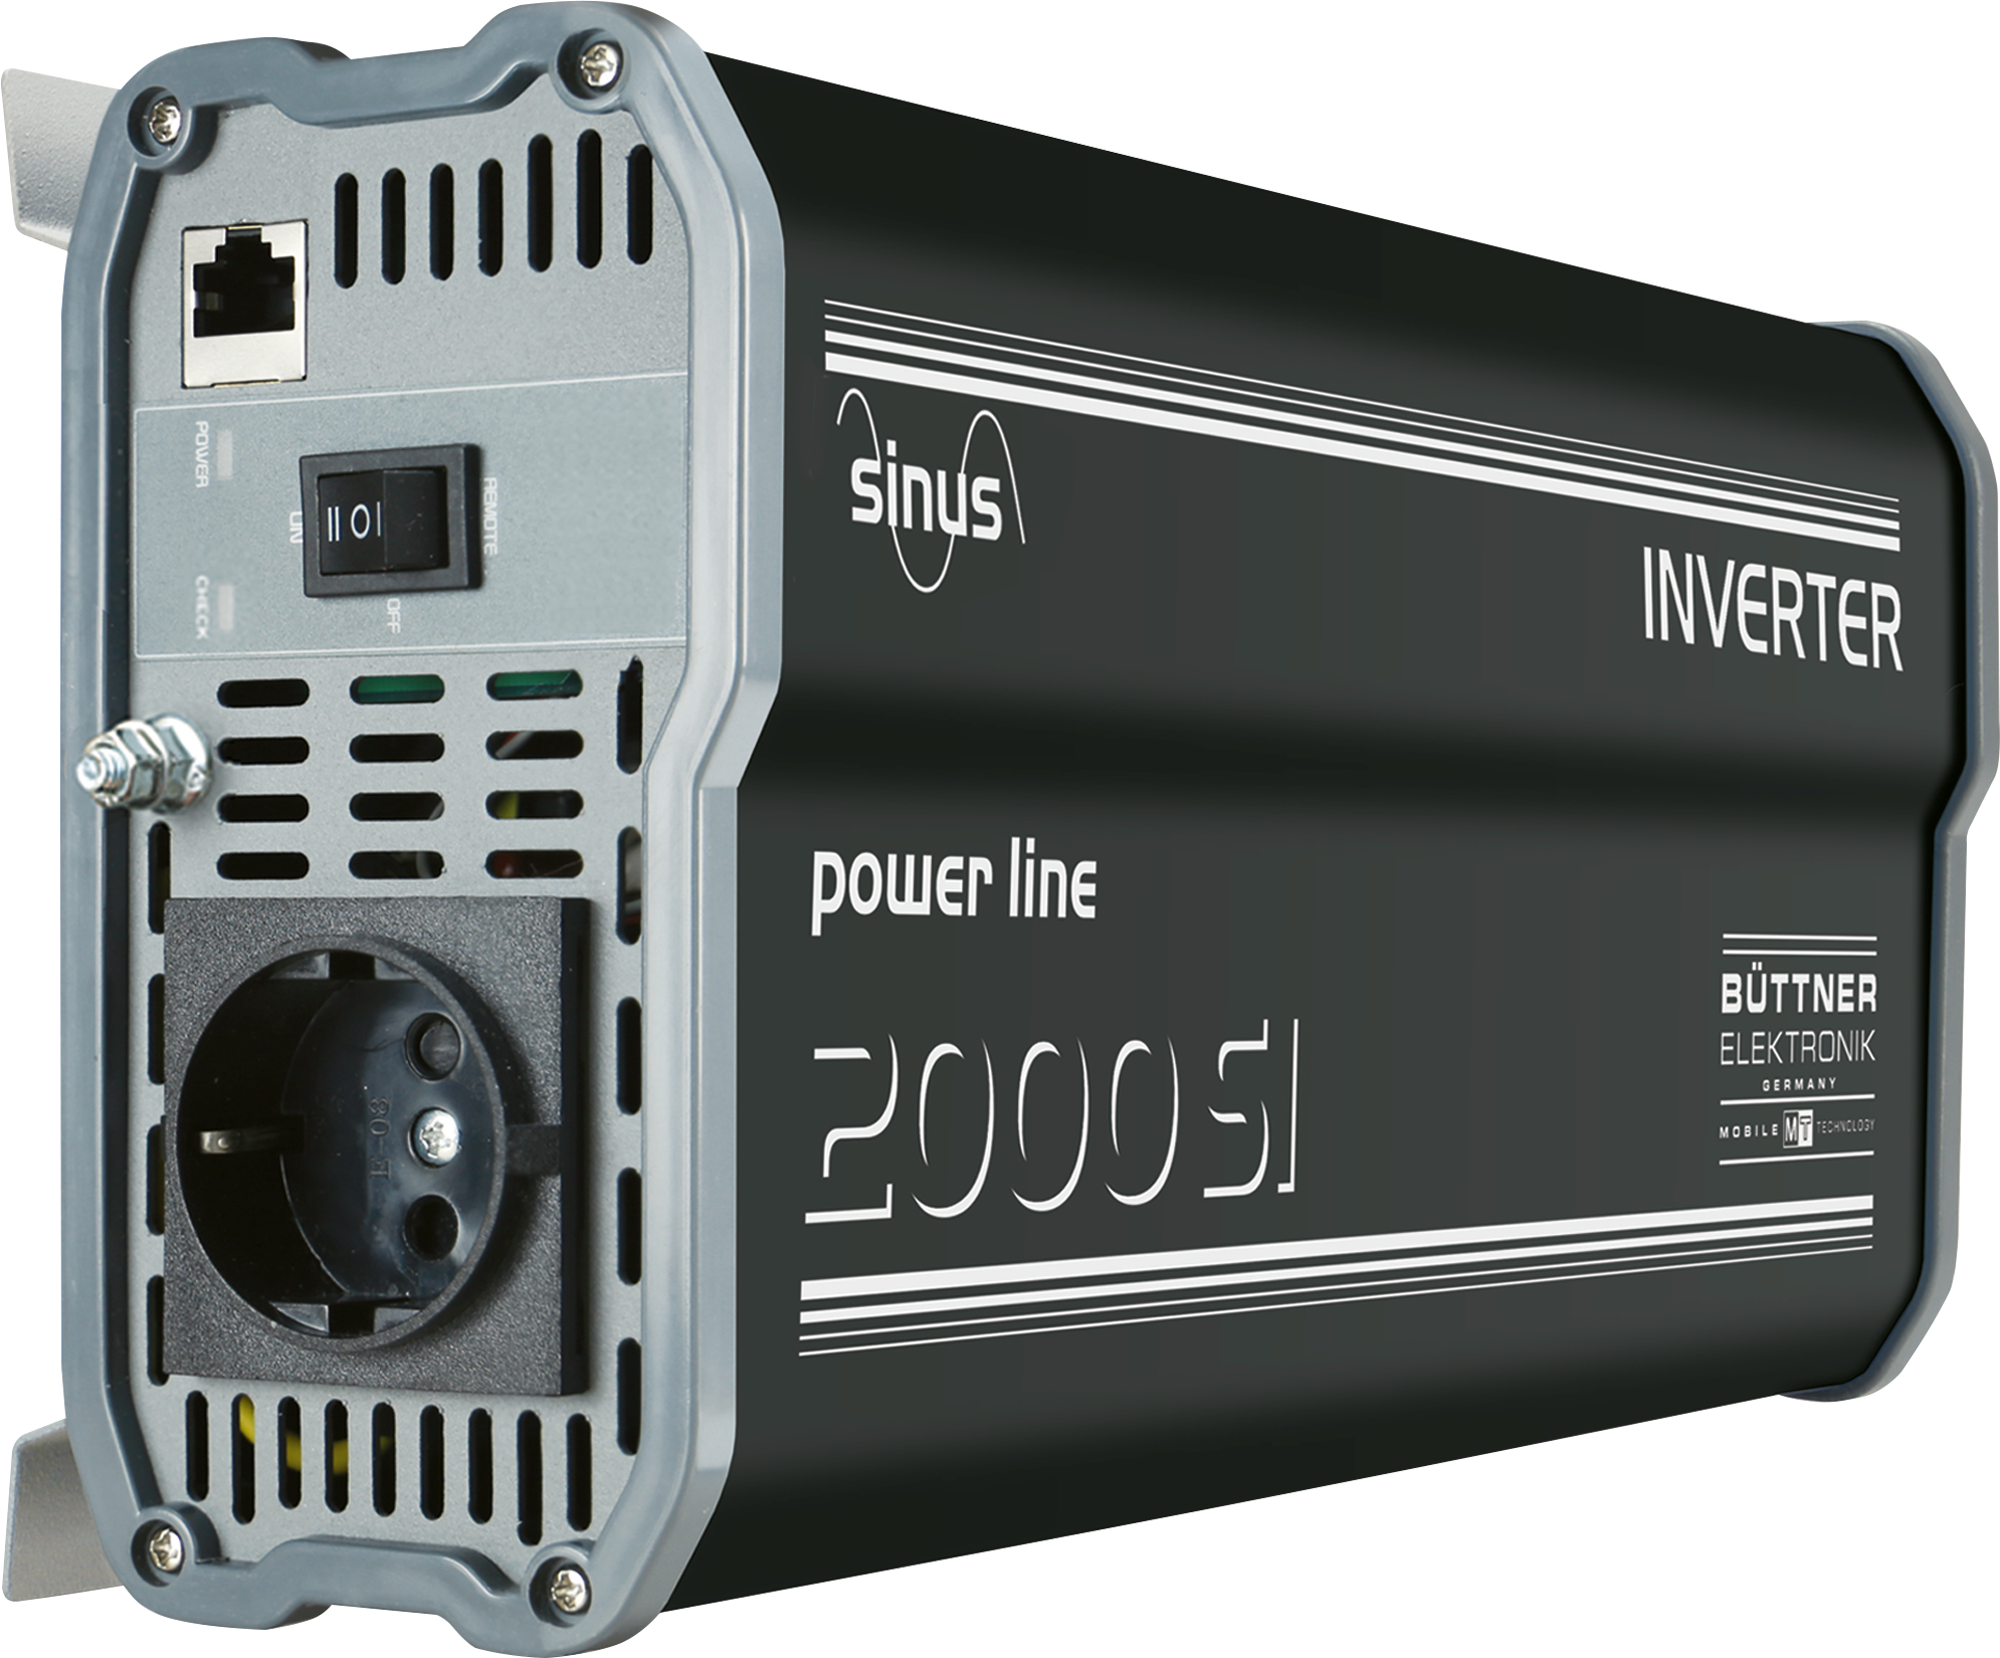 Büttner Elektronik PowerLine Wechselrichter MT PL 2000 SI jetzt bestellen!